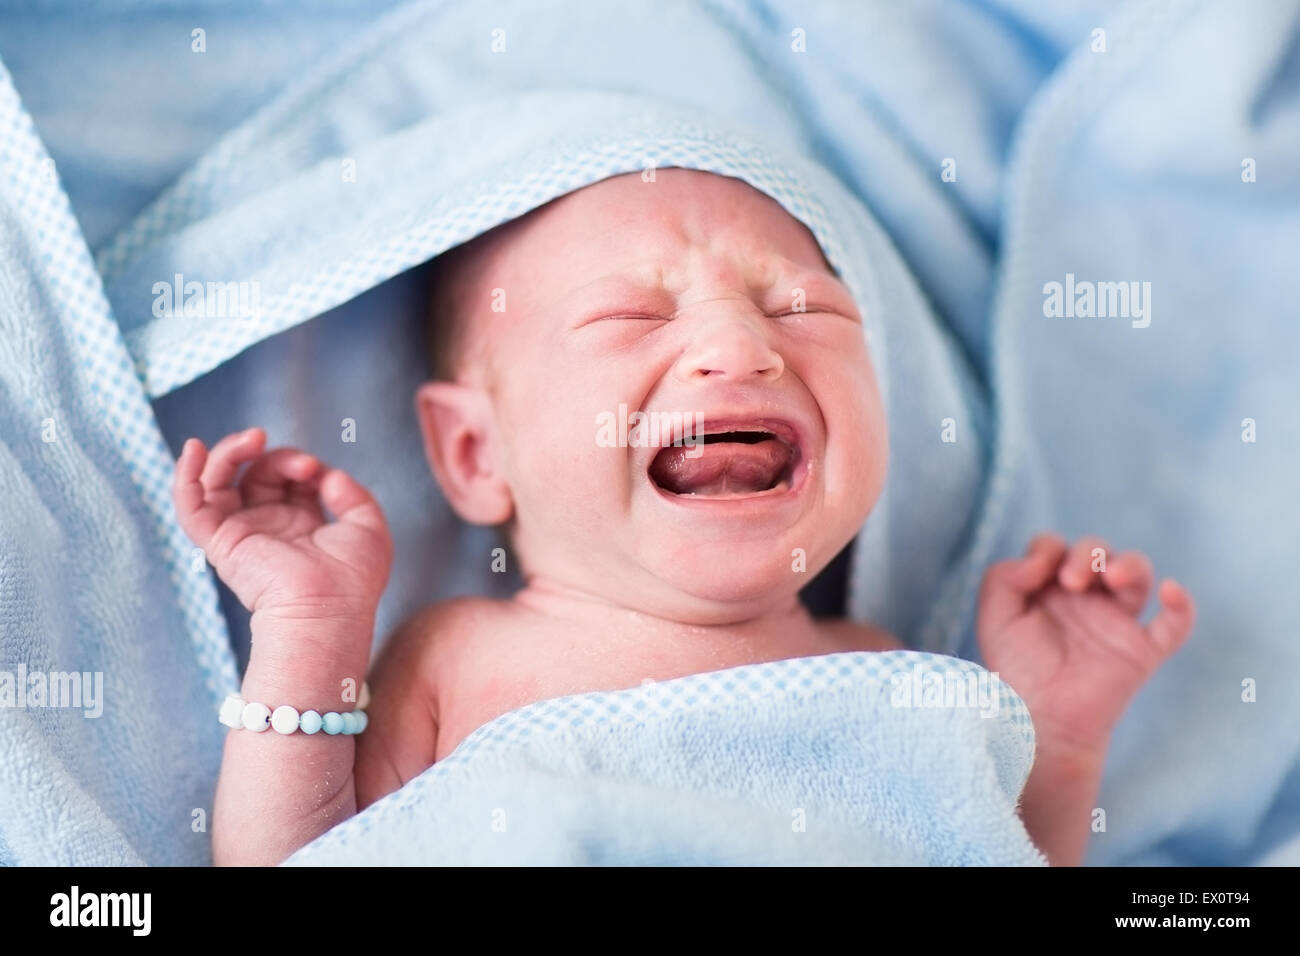 Tint bebé llorando después del baño en una toalla azul Foto de stock